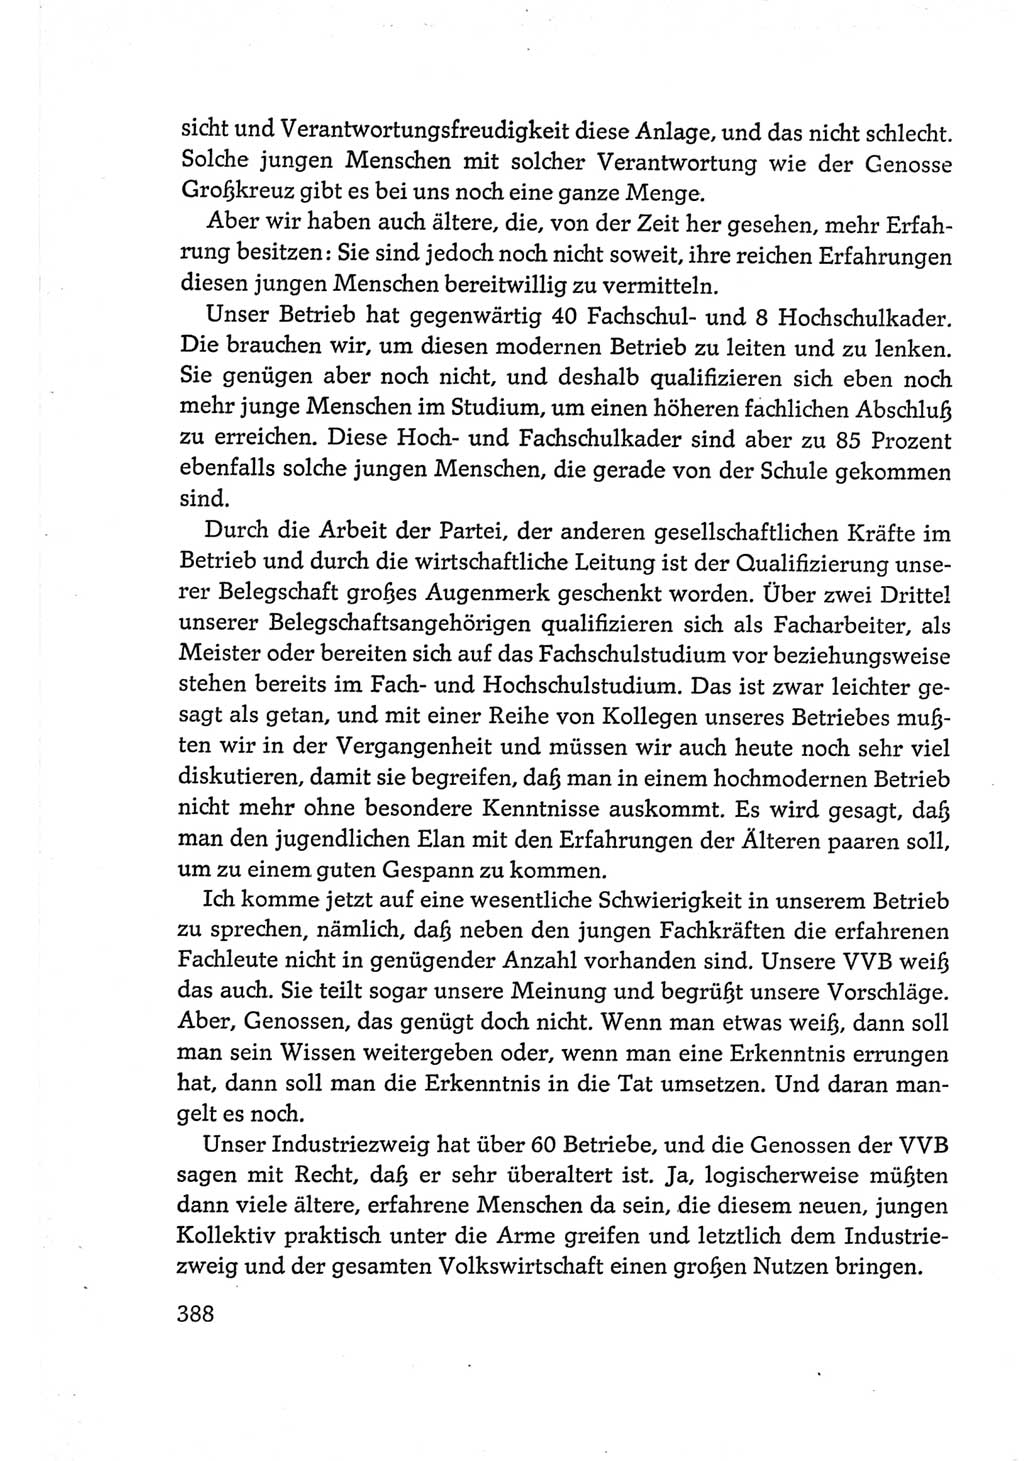 Protokoll der Verhandlungen des Ⅵ. Parteitages der Sozialistischen Einheitspartei Deutschlands (SED) [Deutsche Demokratische Republik (DDR)] 1963, Band Ⅲ, Seite 388 (Prot. Verh. Ⅵ. PT SED DDR 1963, Bd. Ⅲ, S. 388)